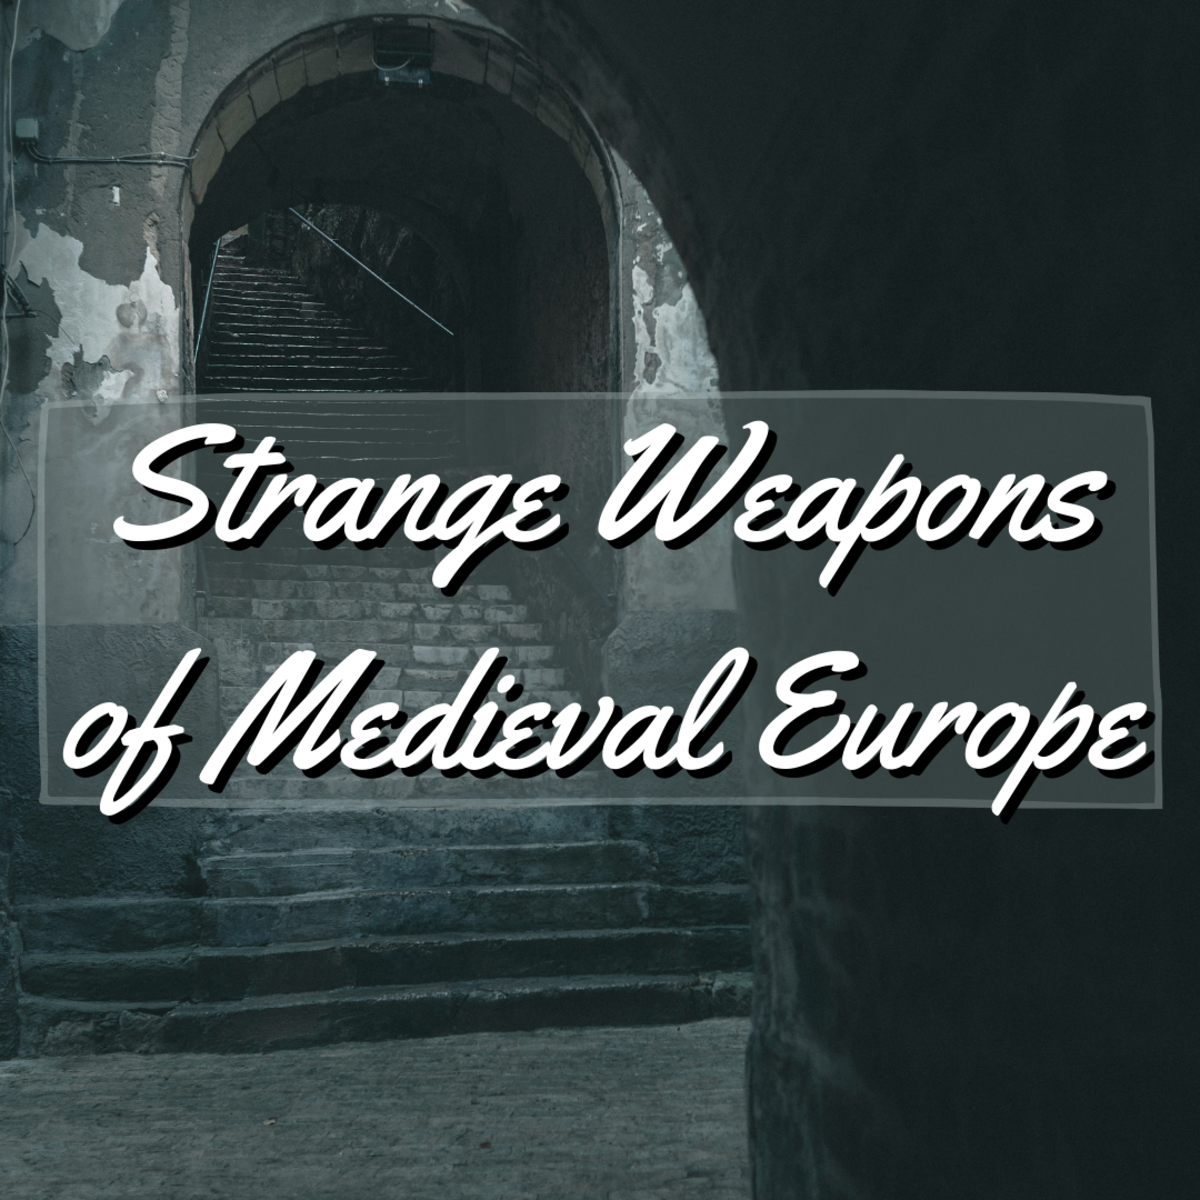 Unusual Weapons of Medieval Europe